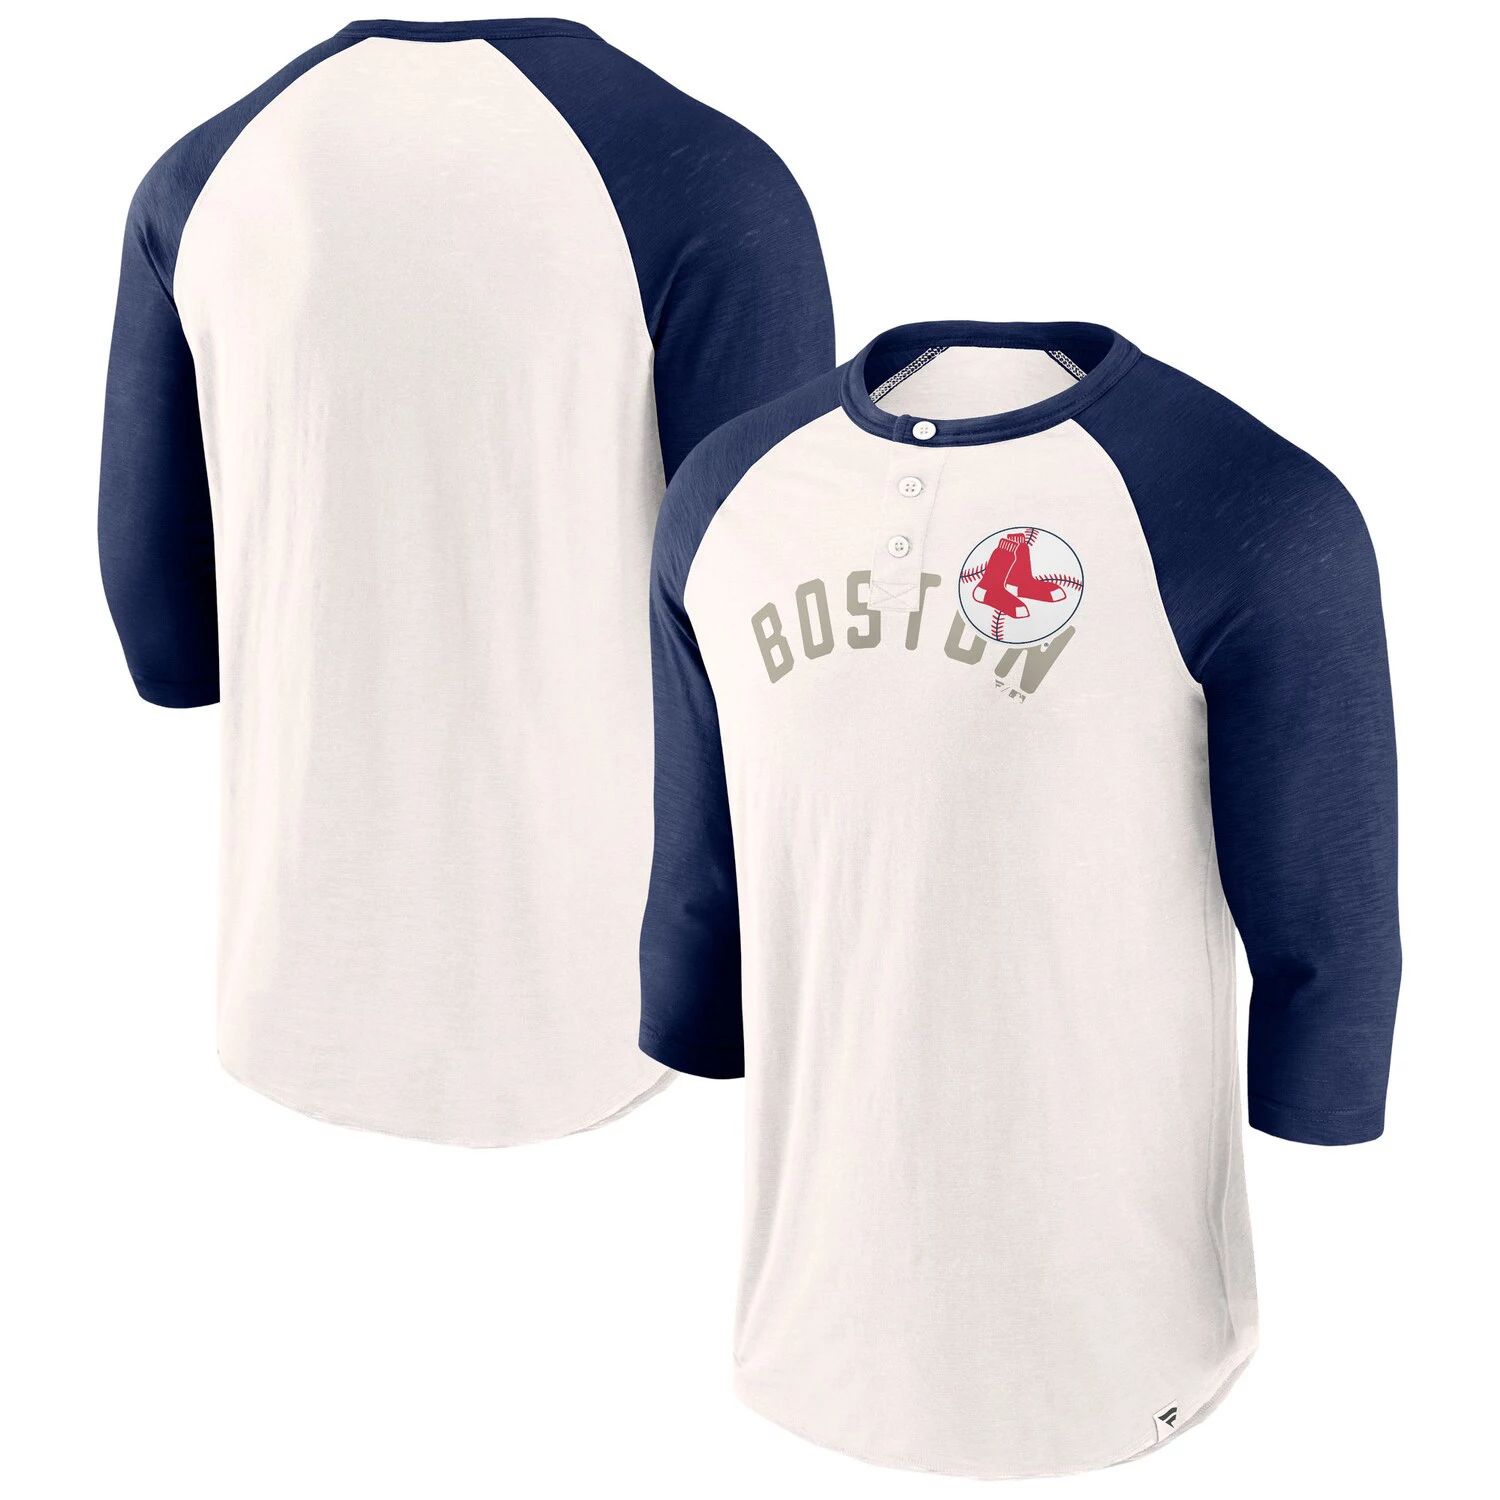 

Мужская футболка с логотипом белого/темно-синего цвета Boston Red Sox Backdoor Slider Raglan с рукавами 3/4 Fanatics, Синий